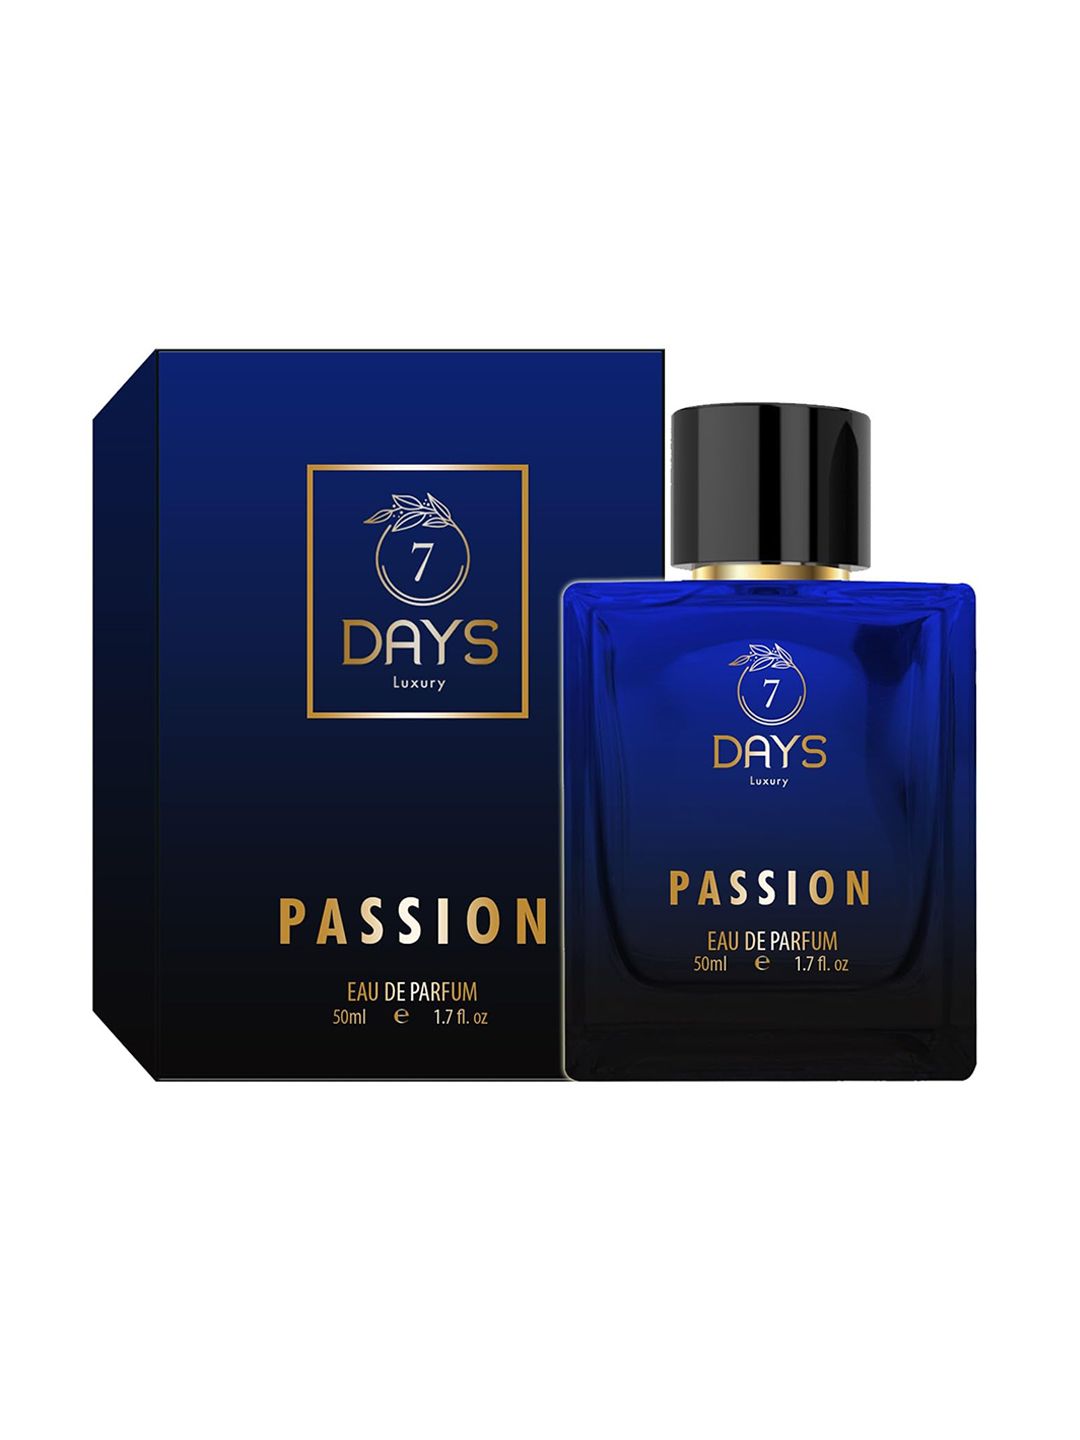 7 DAYS Luxury Passion Eau De Parfum - 50ml